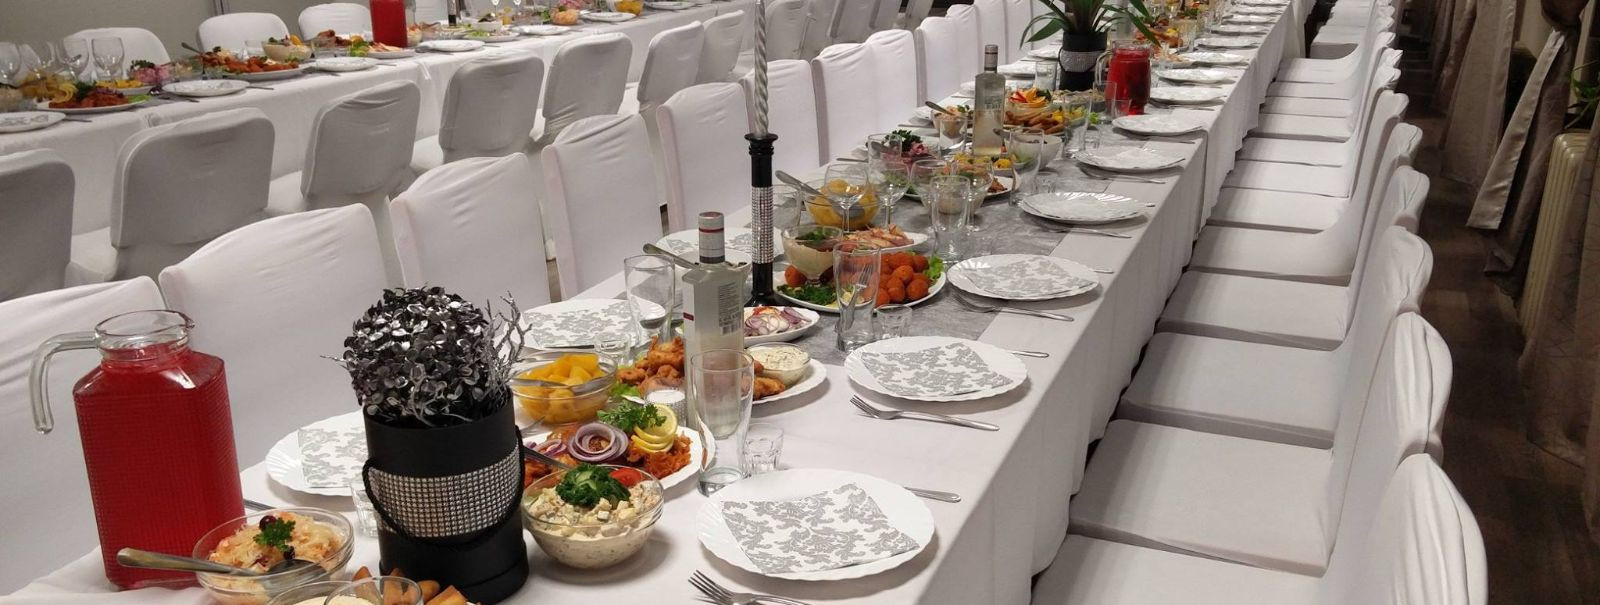 Kui võõrustate pidu, on laud sündmuse keskpunkt. See on koht, kus külalised kogunevad, jagavad sööki ja loovad mälestusi. Hästi seatud laud ei ole ainult esteet